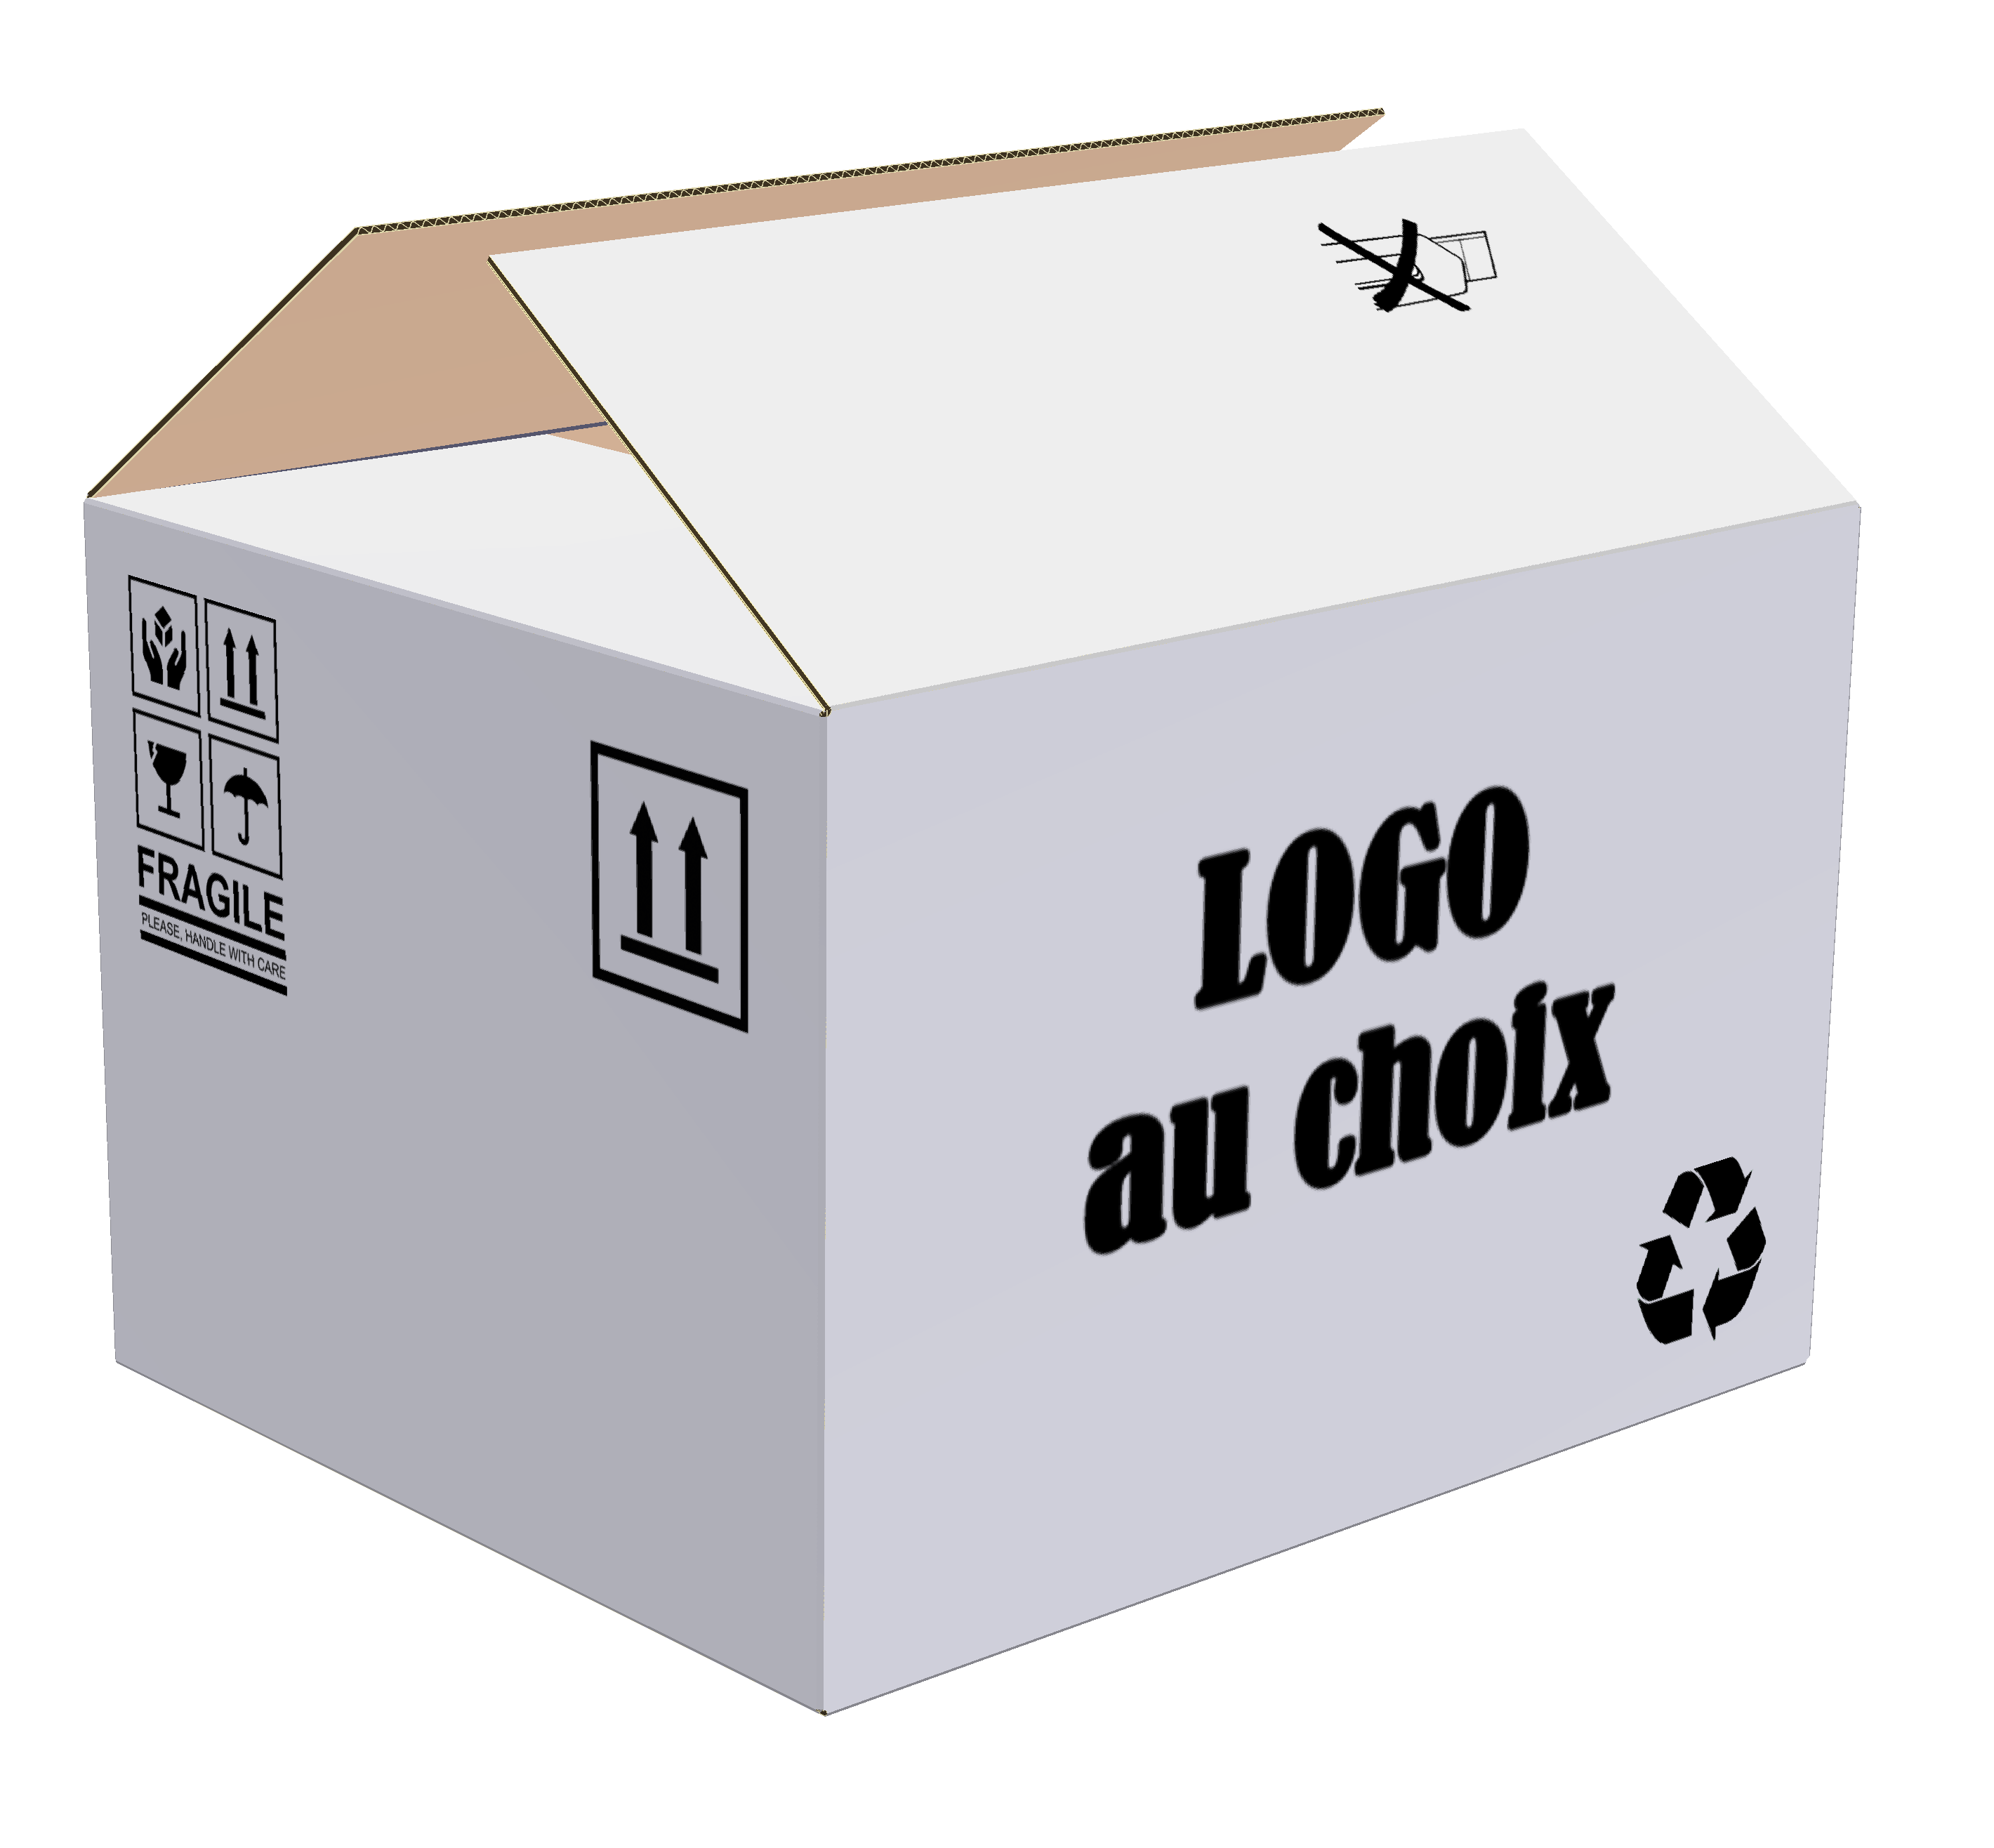 Boîte régulière RSC blanche, personnalisée avec de l'écriture directement sur la boîte. 